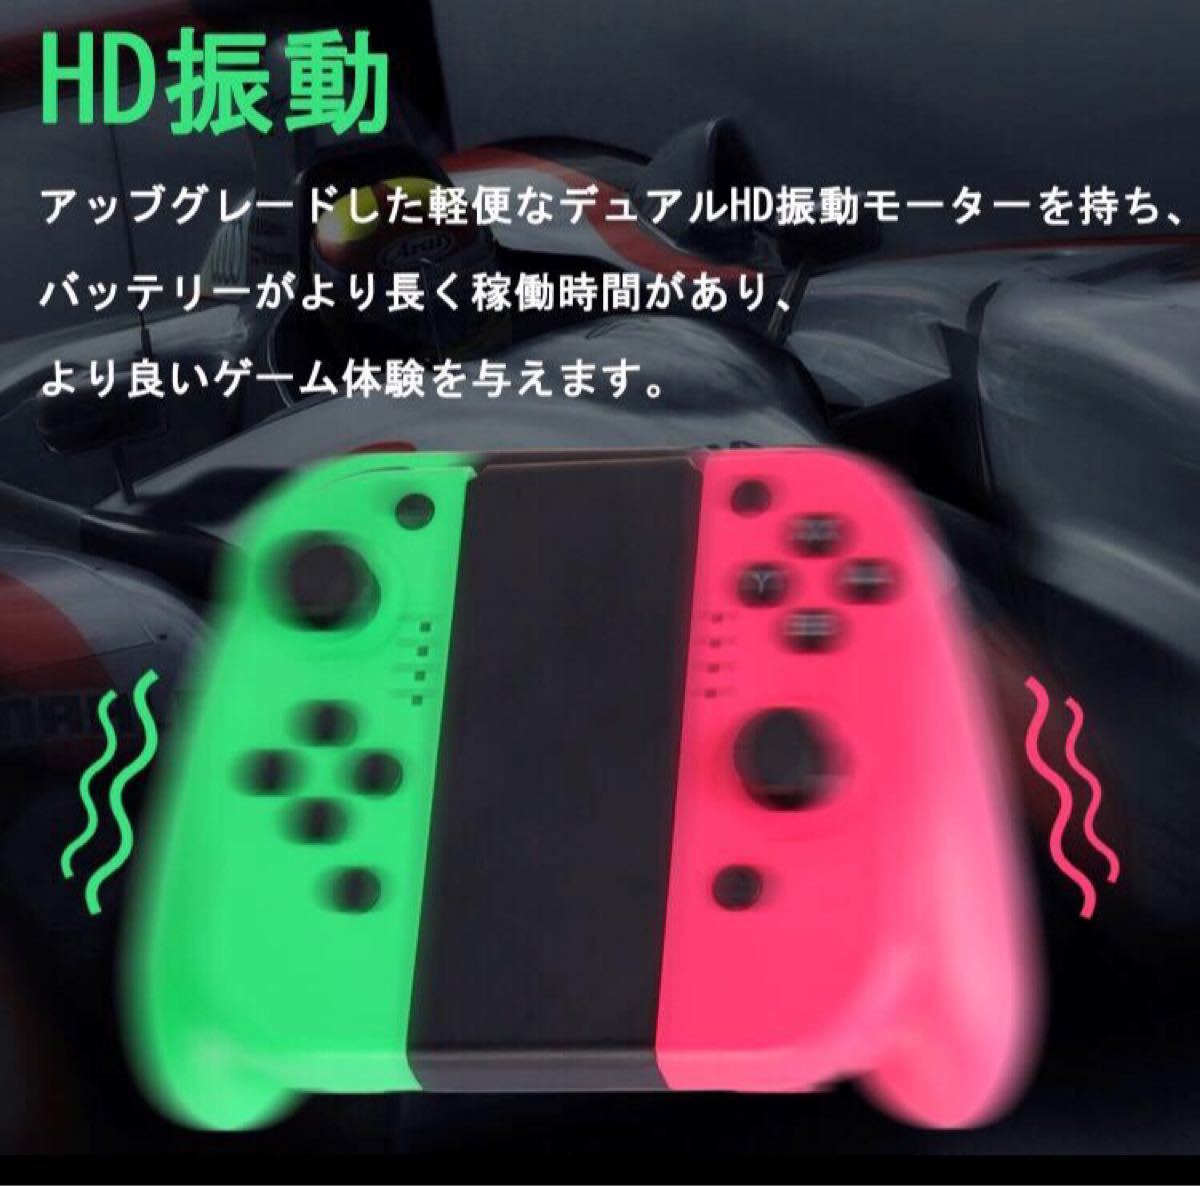 Nintendo Switch コントローラー Joy-Con の代用品 